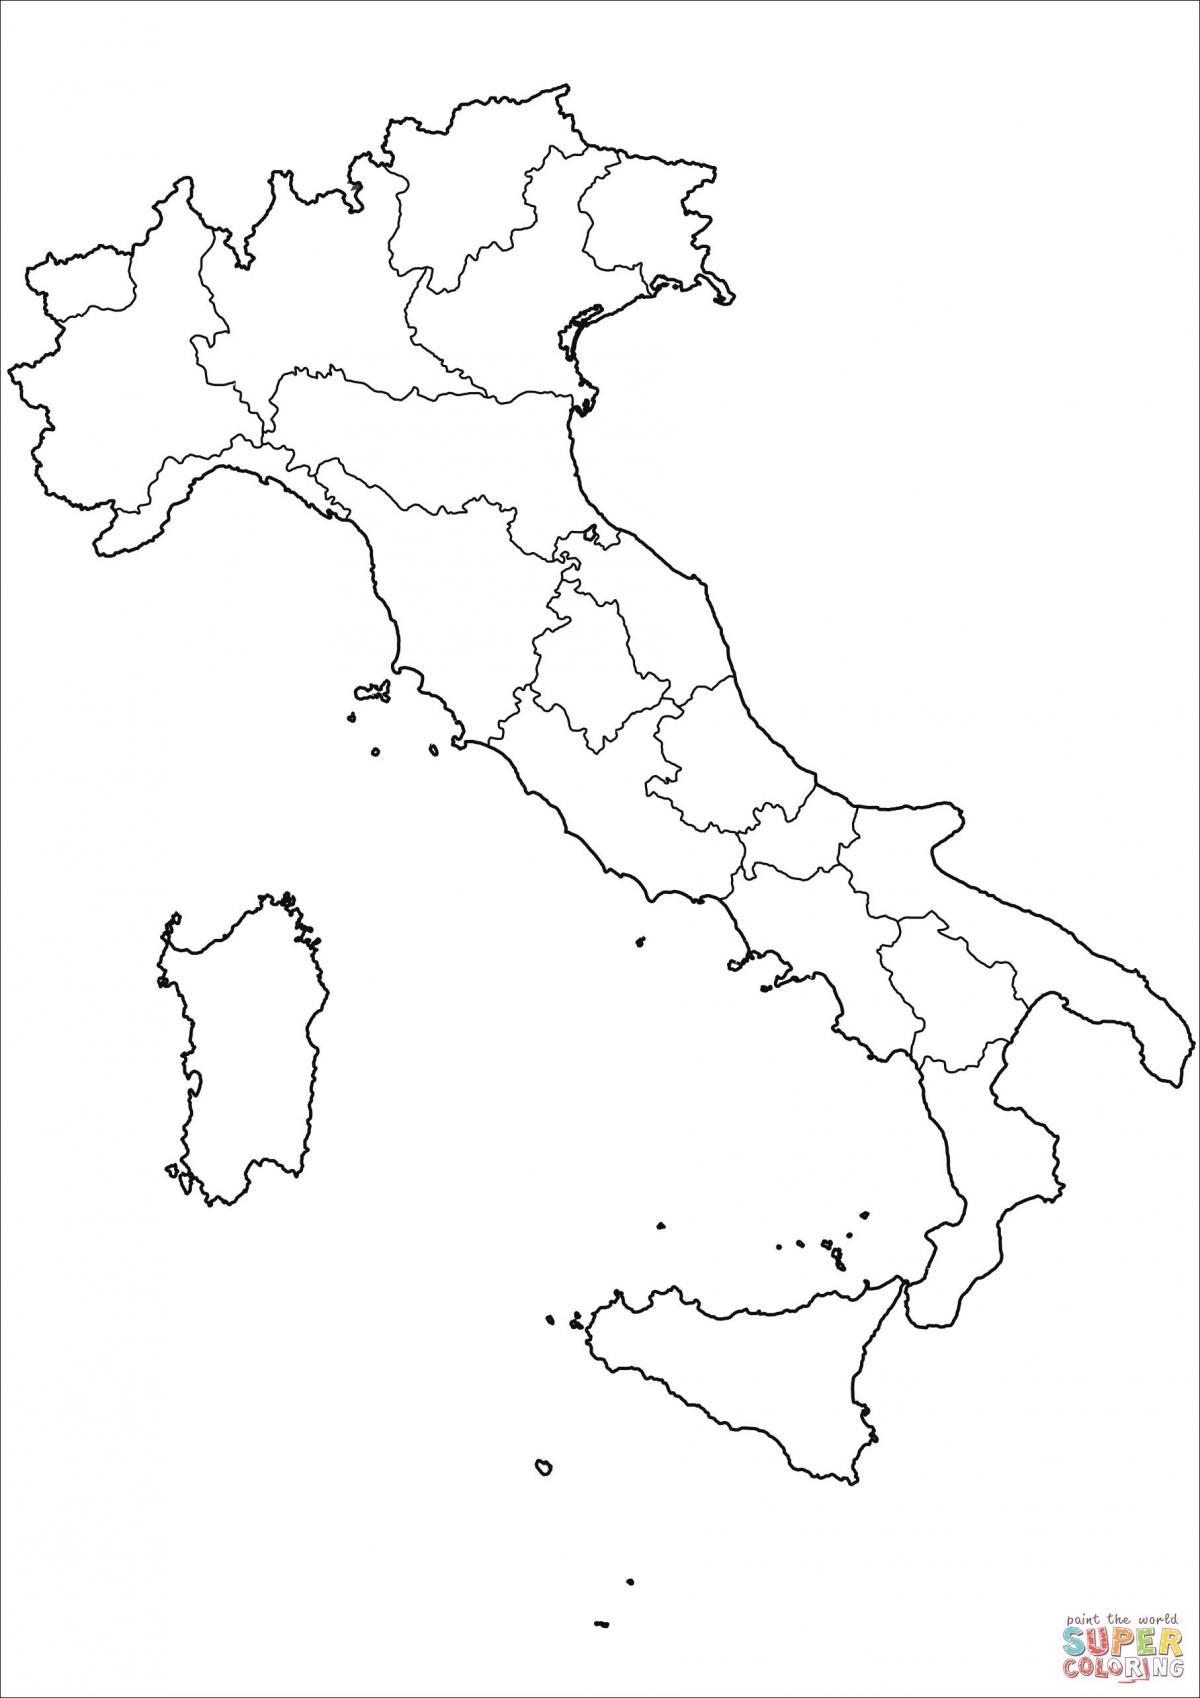 Pusta mapa Włoch